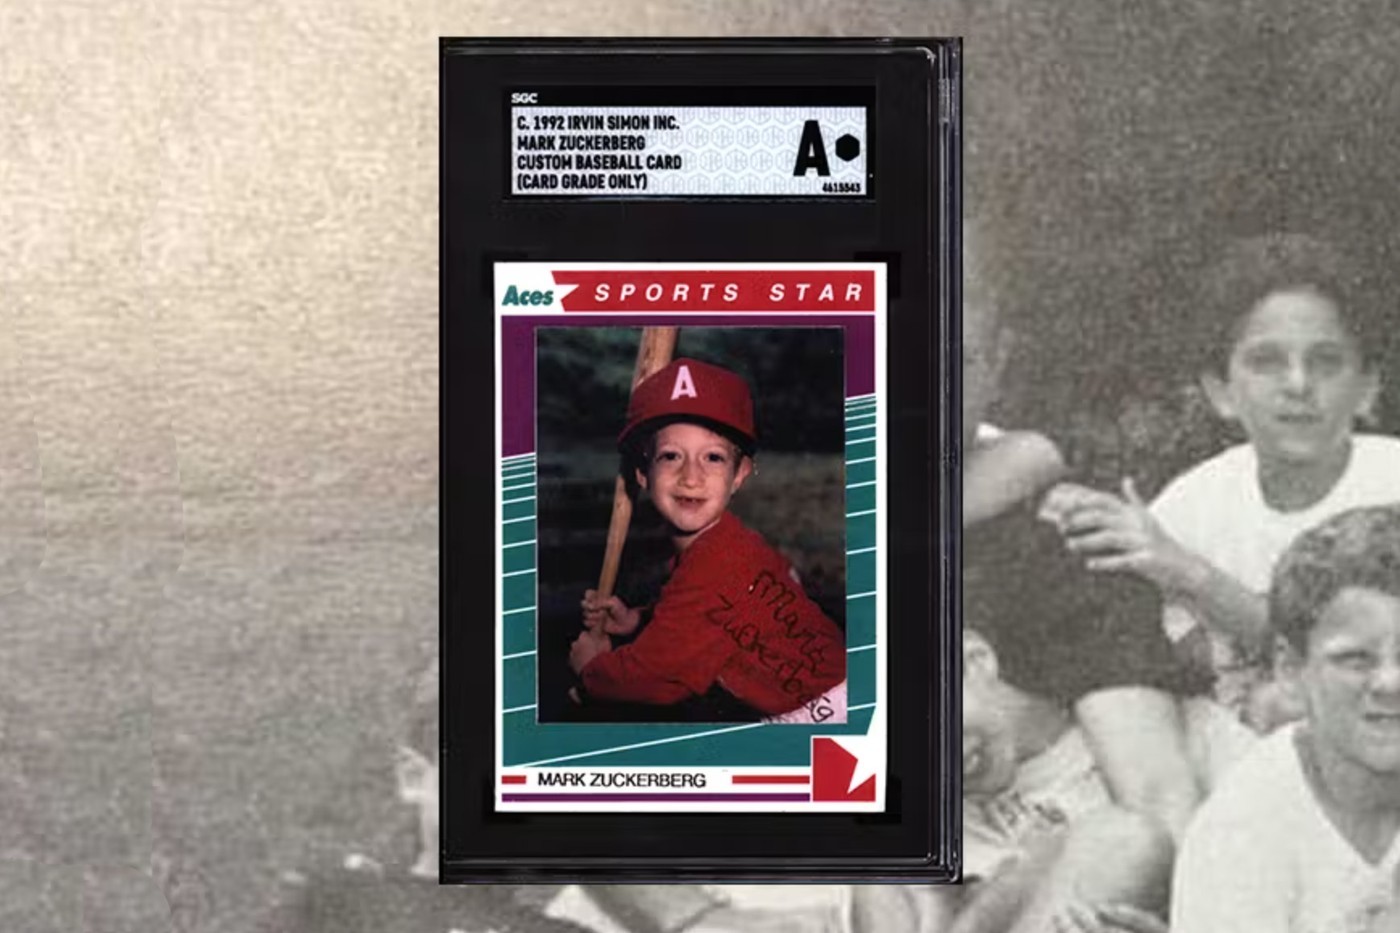 曾经的棒球梦？Mark Zuckerberg 童年特制棒球卡将公开拍卖